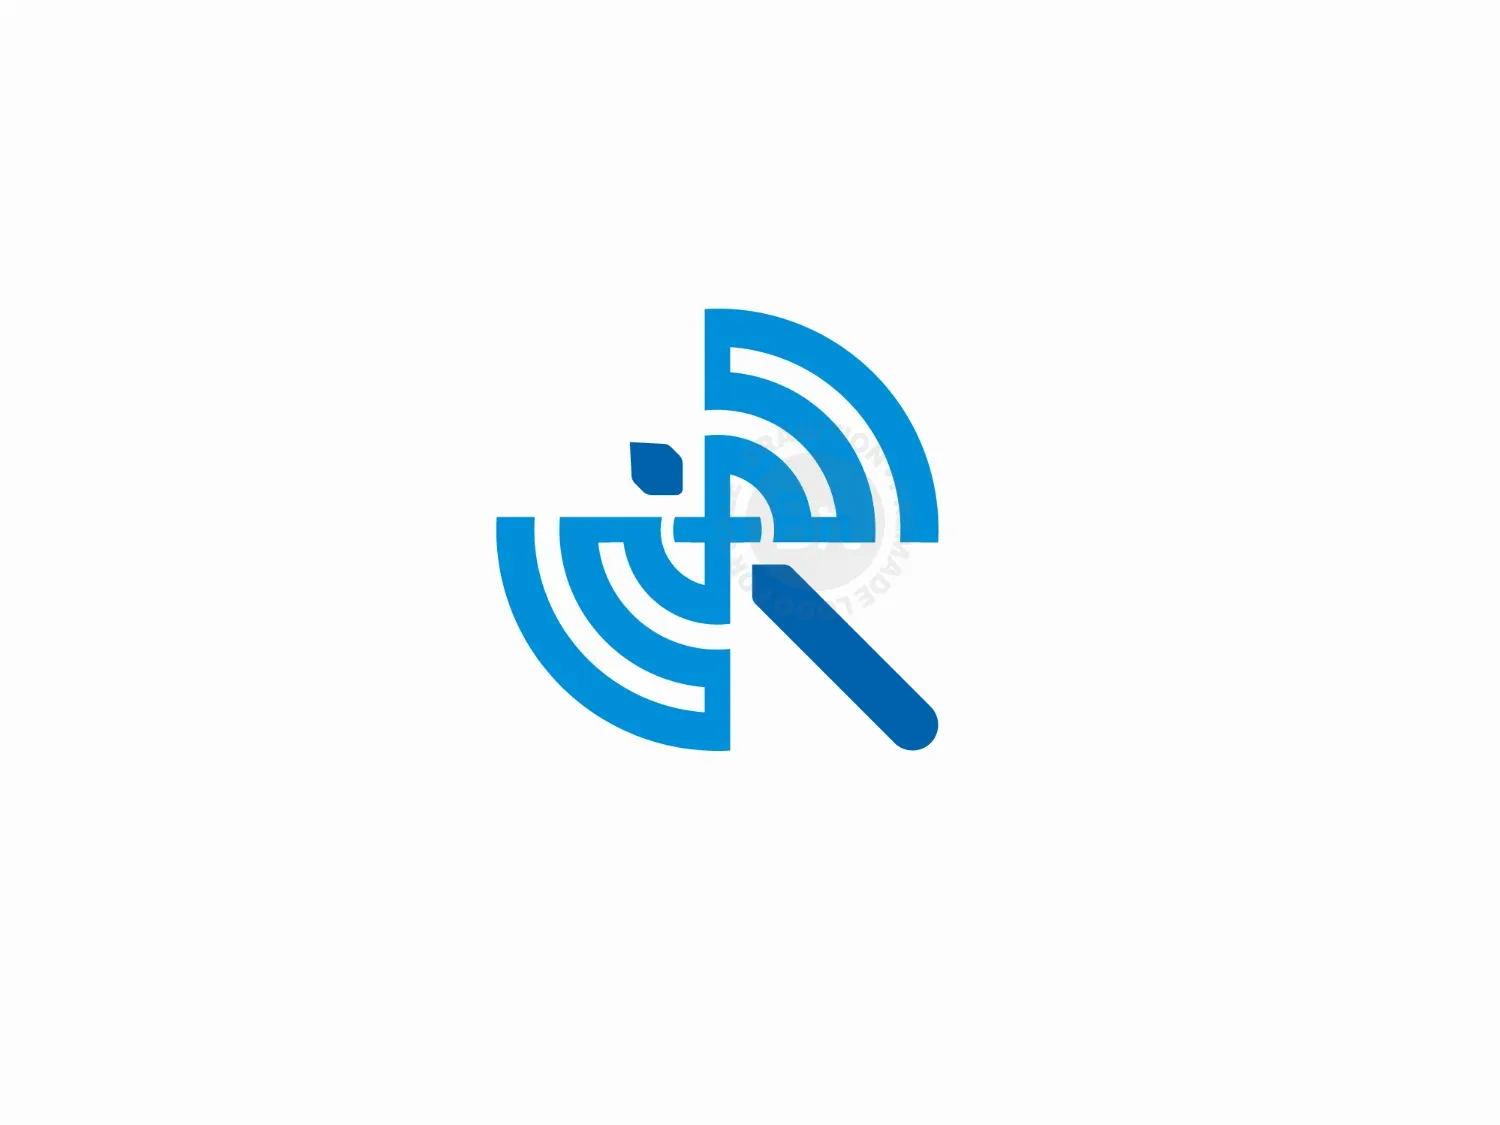 Axe WIFI Or Axe Communication Logo